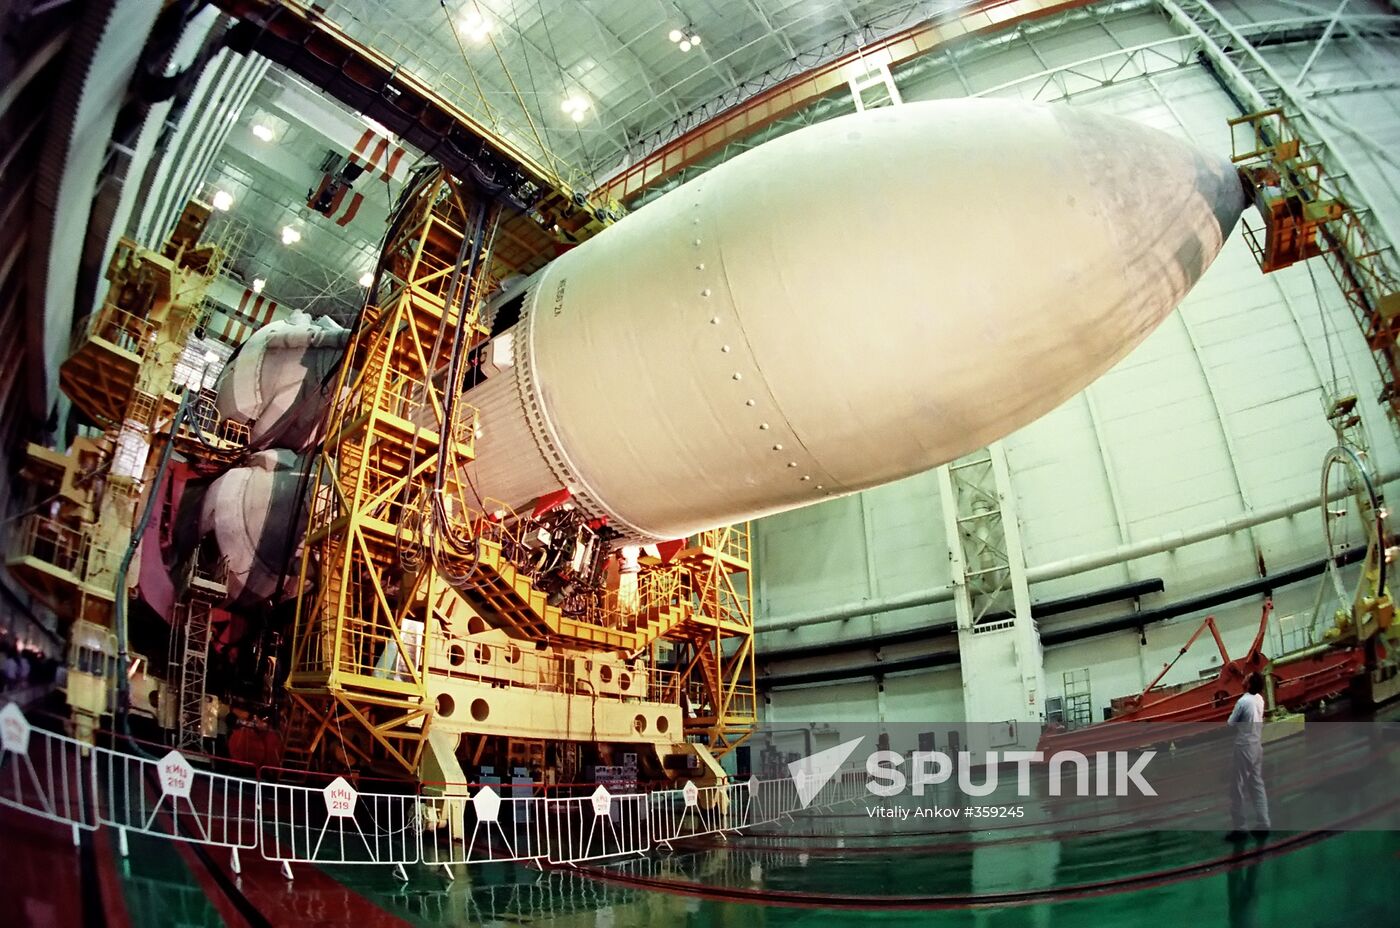 Energia rocket at Baikonur space center